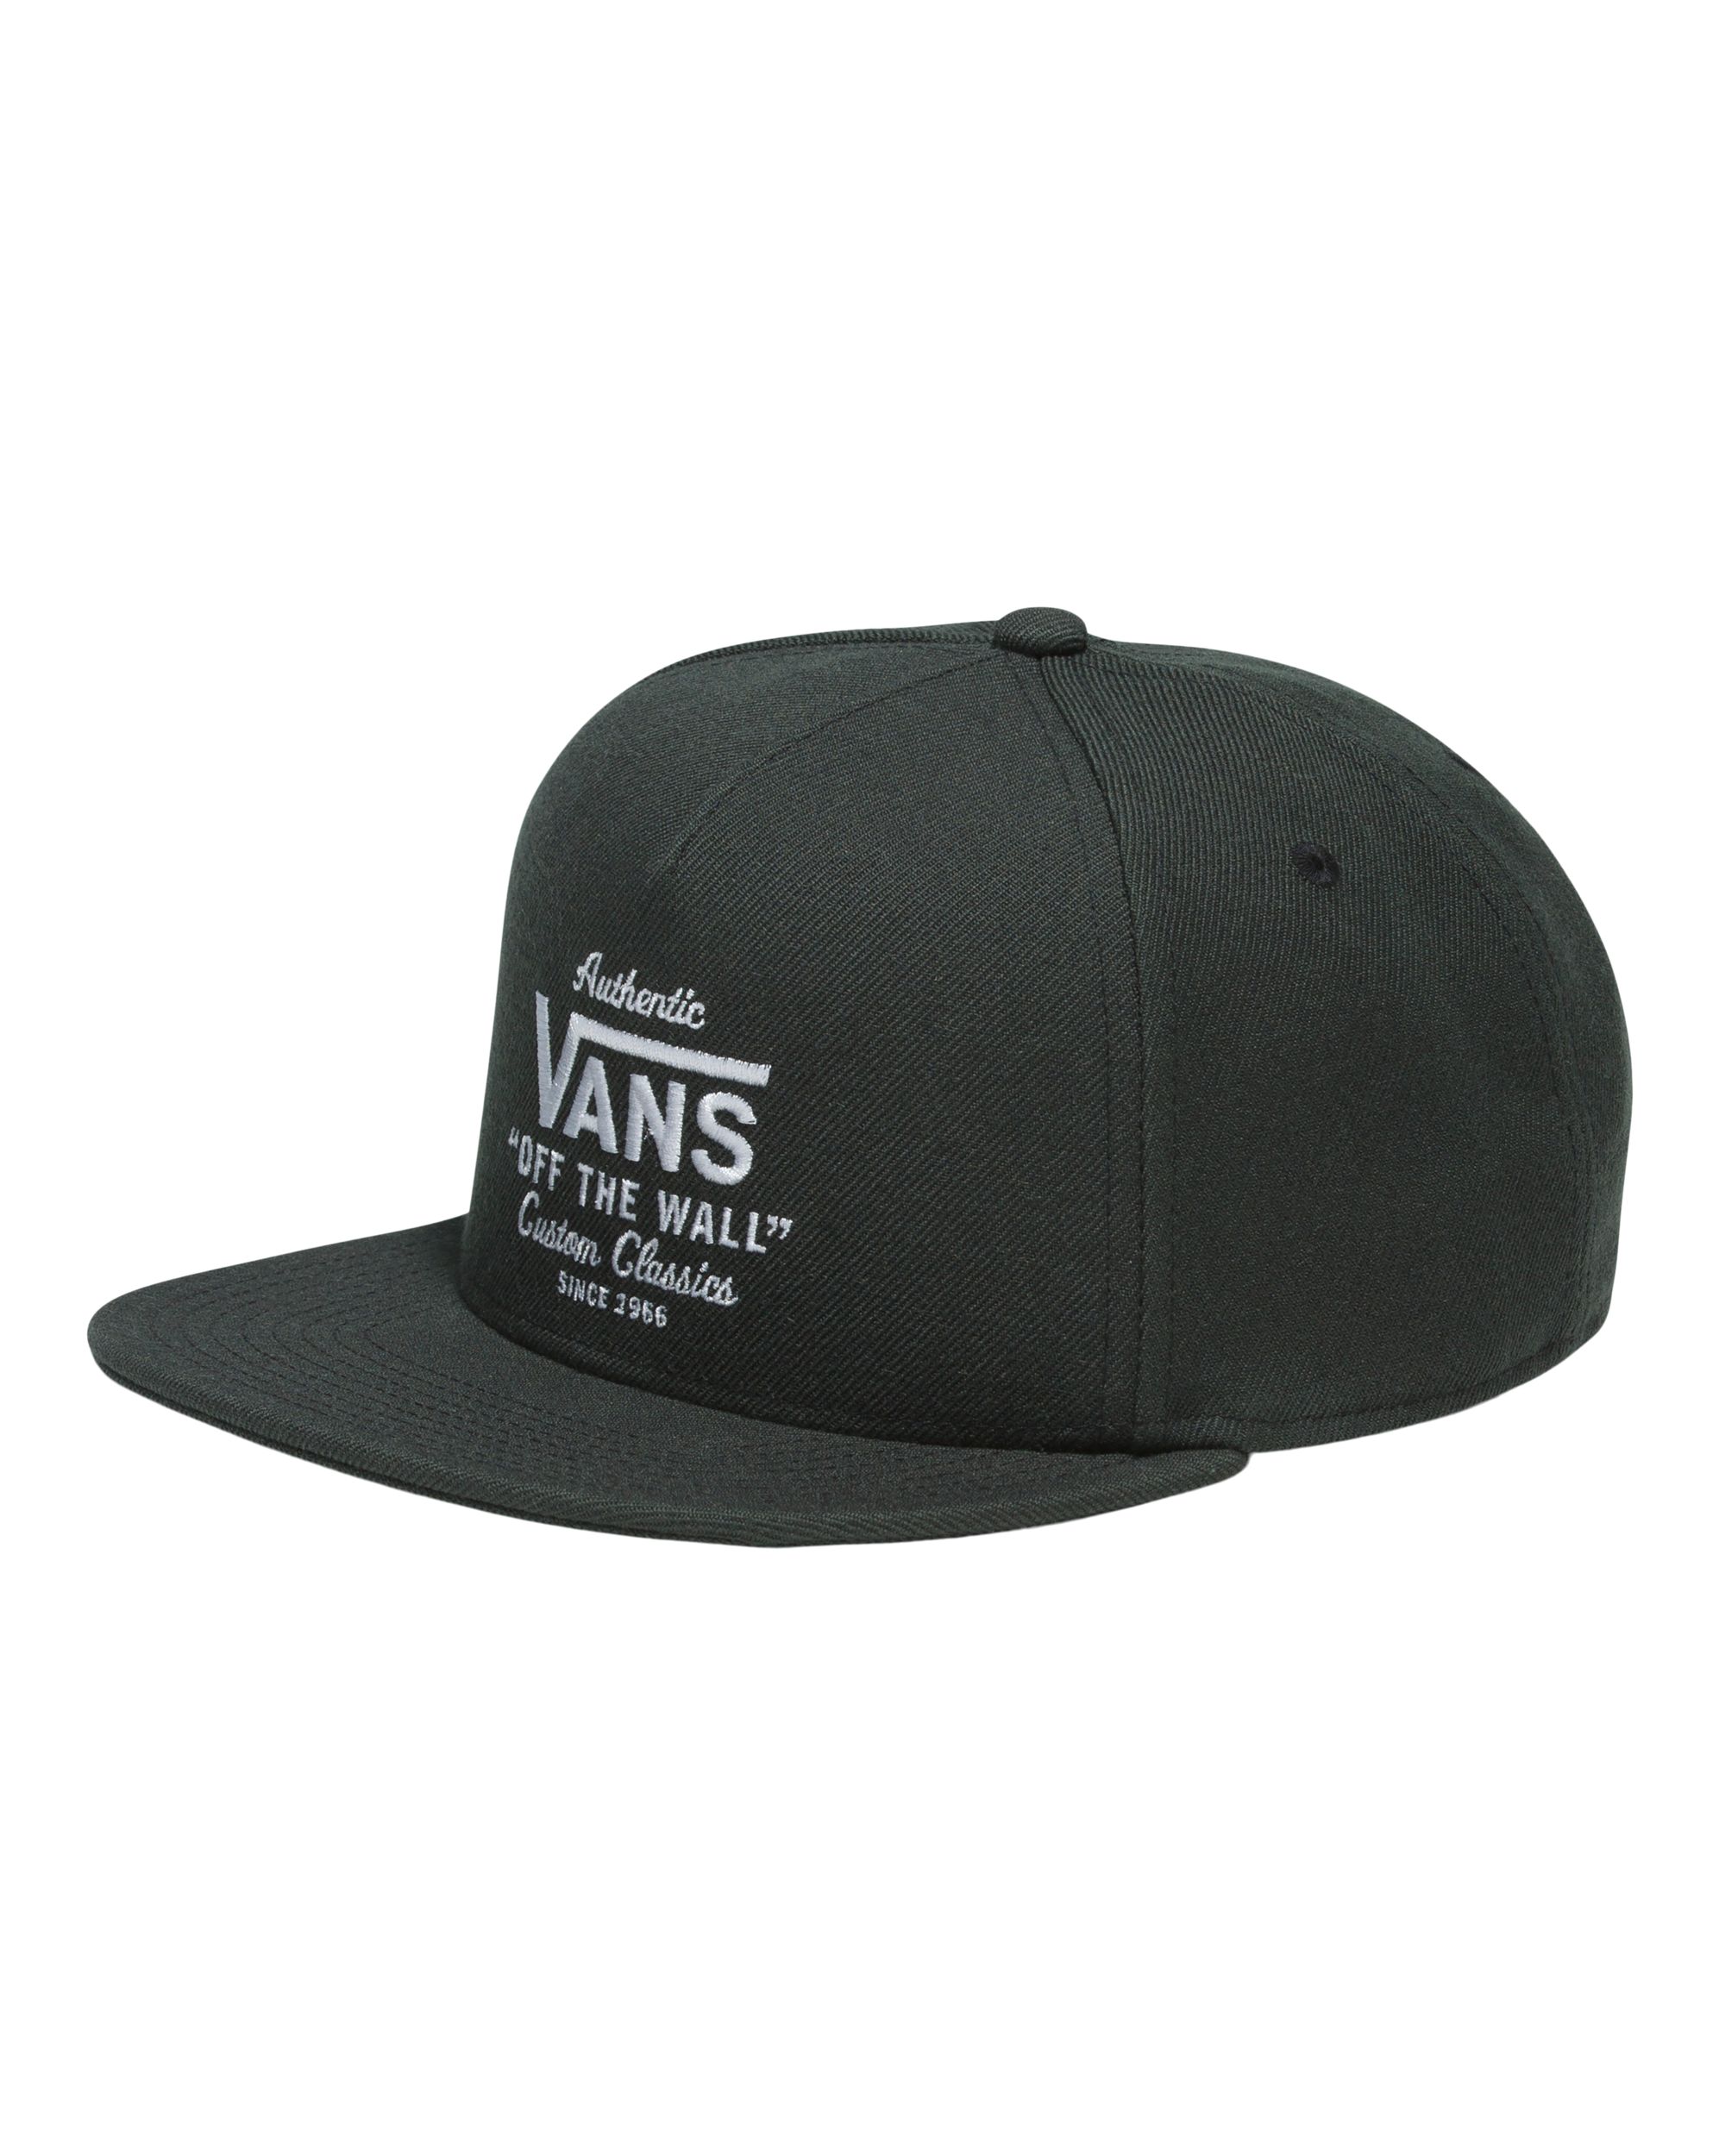 Vans Authentic Snapback Hat - Black